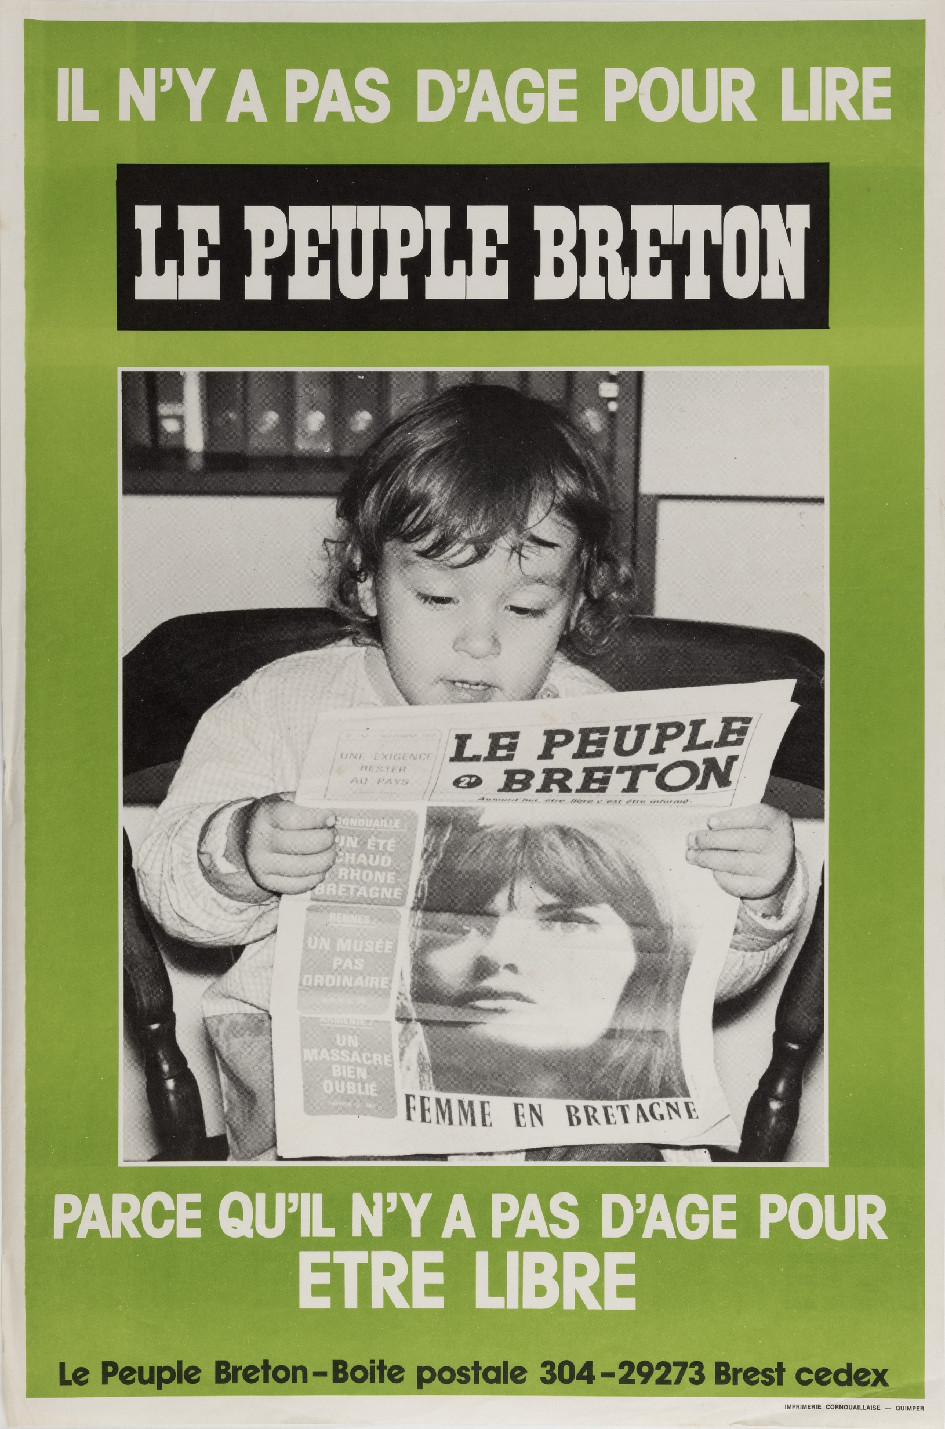 Il n'y a pas d'Âge pour lire le Peuple breton, affiche anonyme (19776). Collections Musée de Bretagne, Rennes : 2019.0001.161, CC-BY-NC-ND.